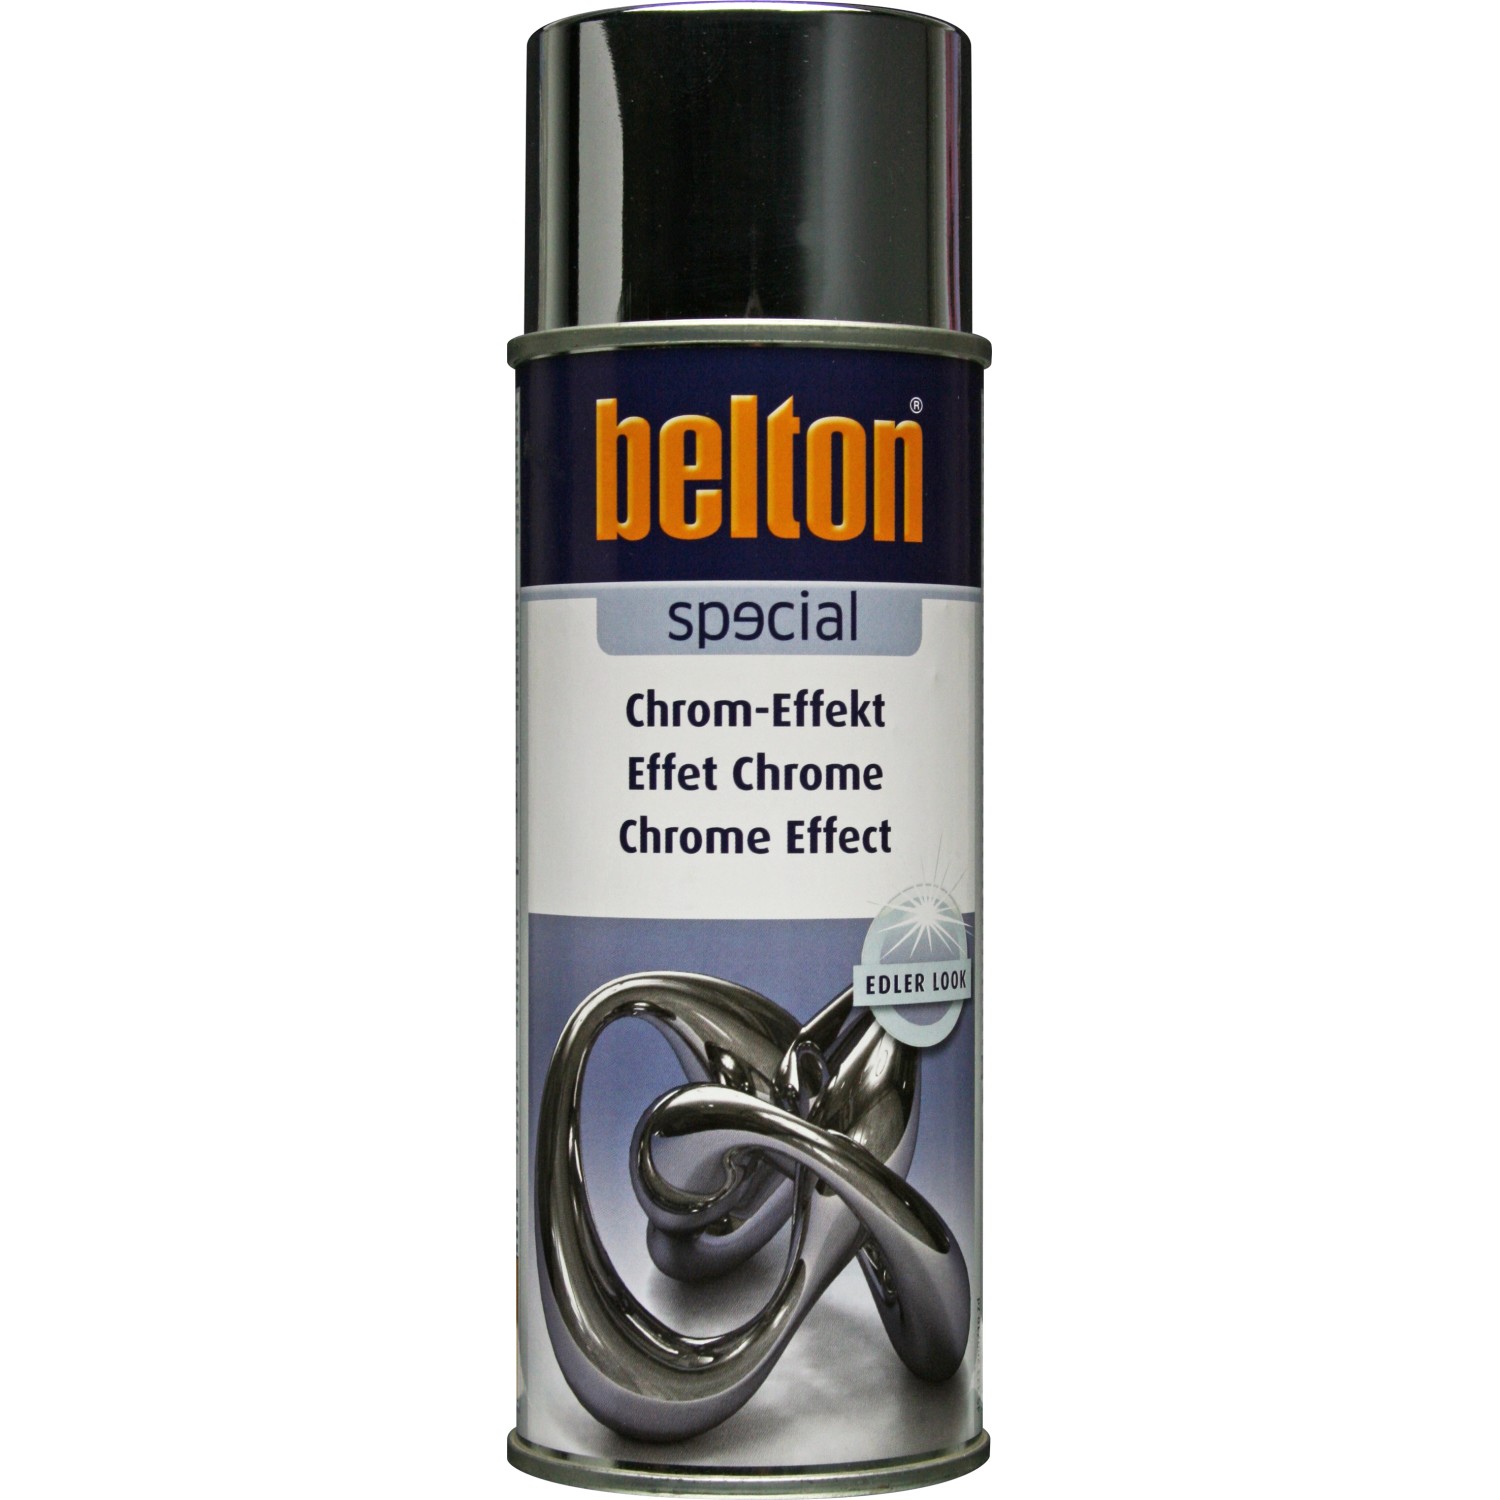 Belton Special Chrom-Effekt Spray glänzend 400 ml von belton